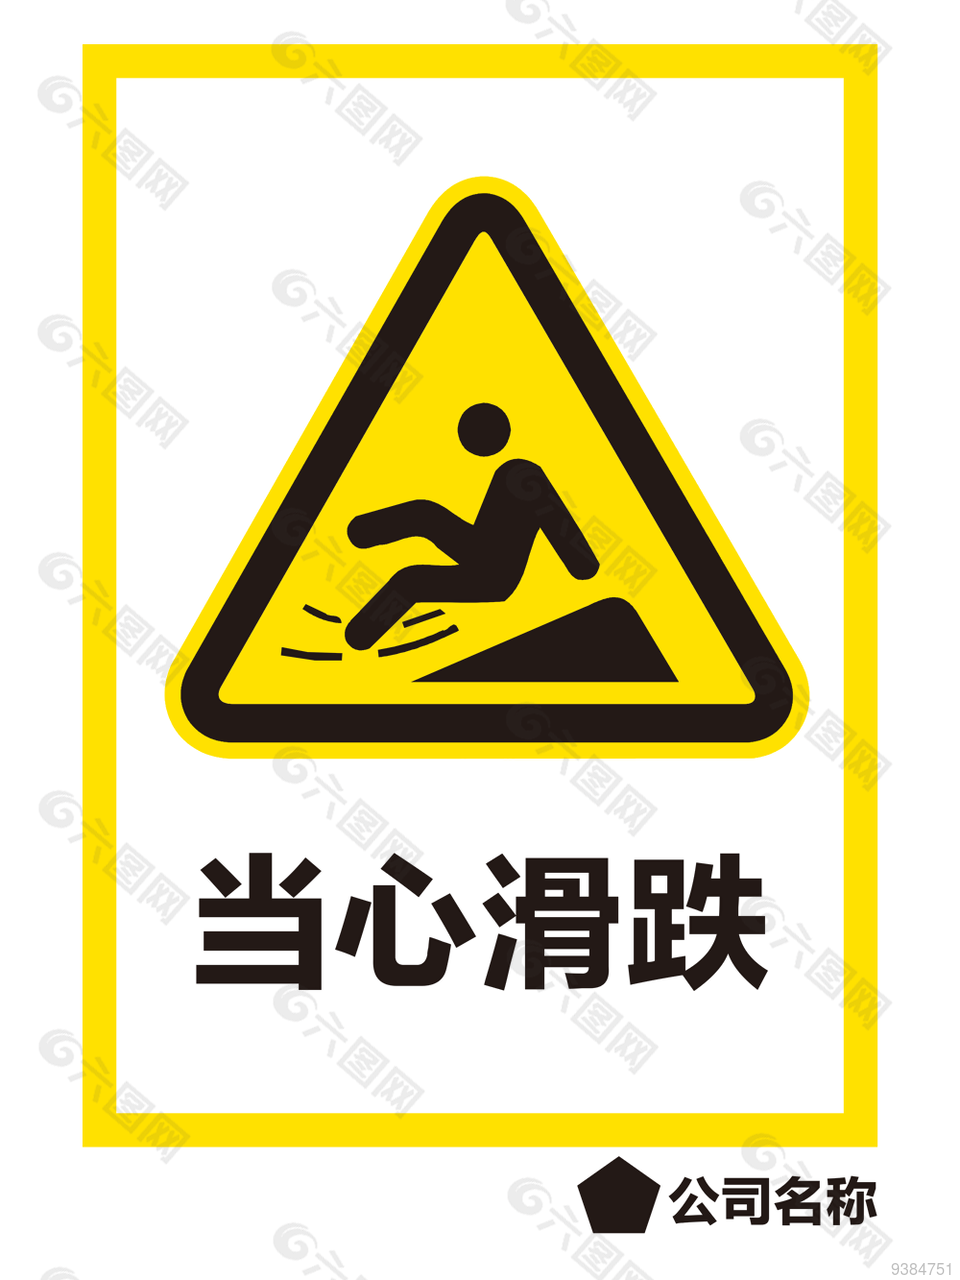 当心滑跌施工场所安全警示标志